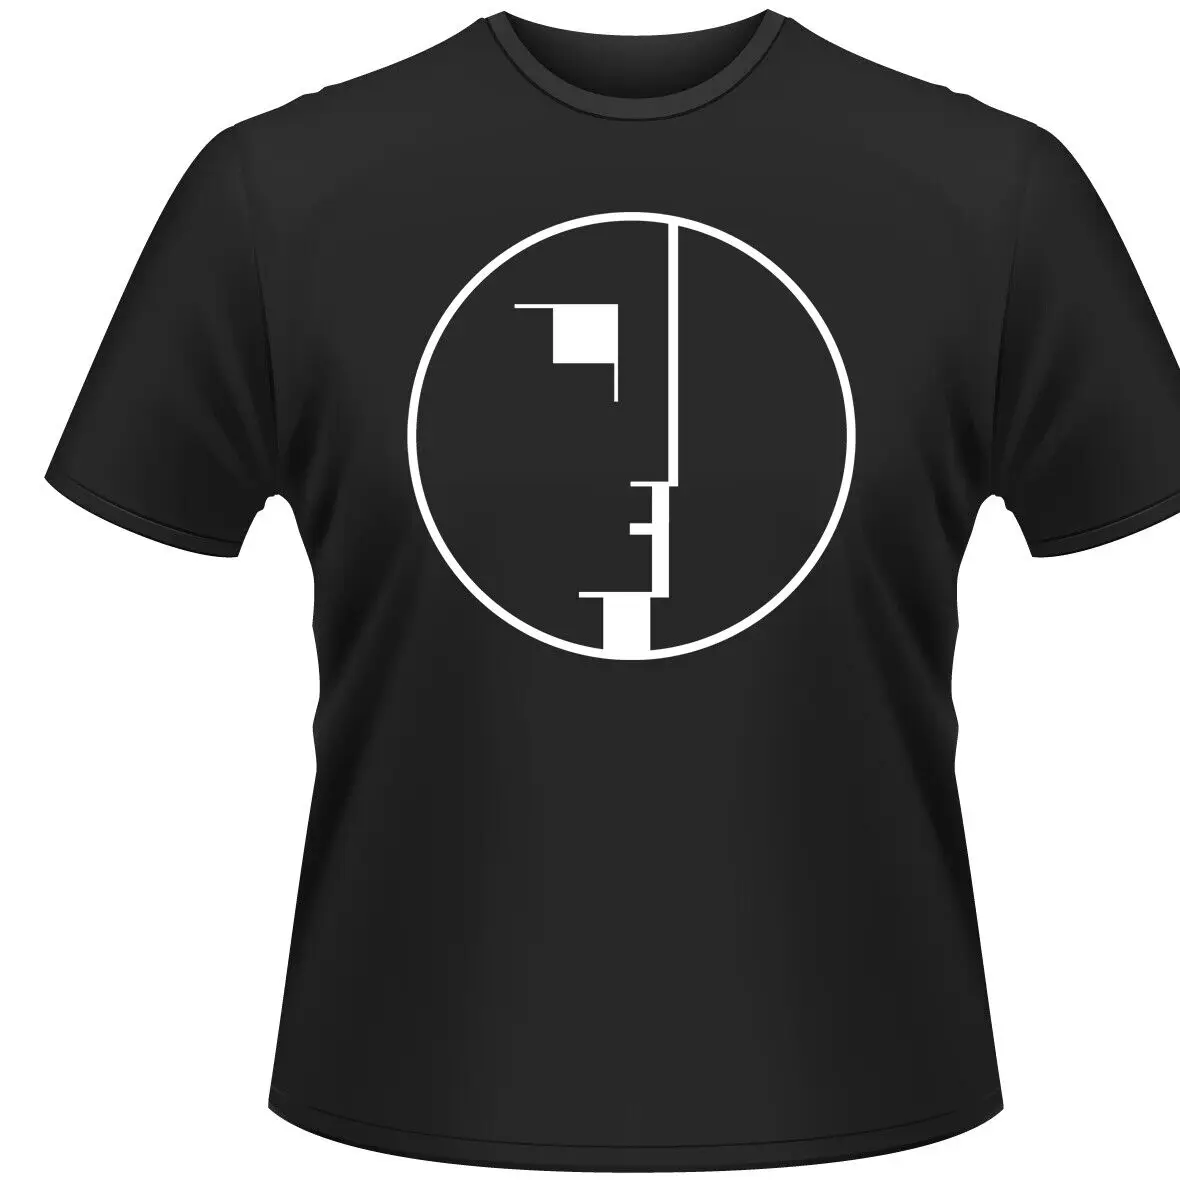 ЧЕРНАЯ футболка с логотипом BAUHAUS Большого размера